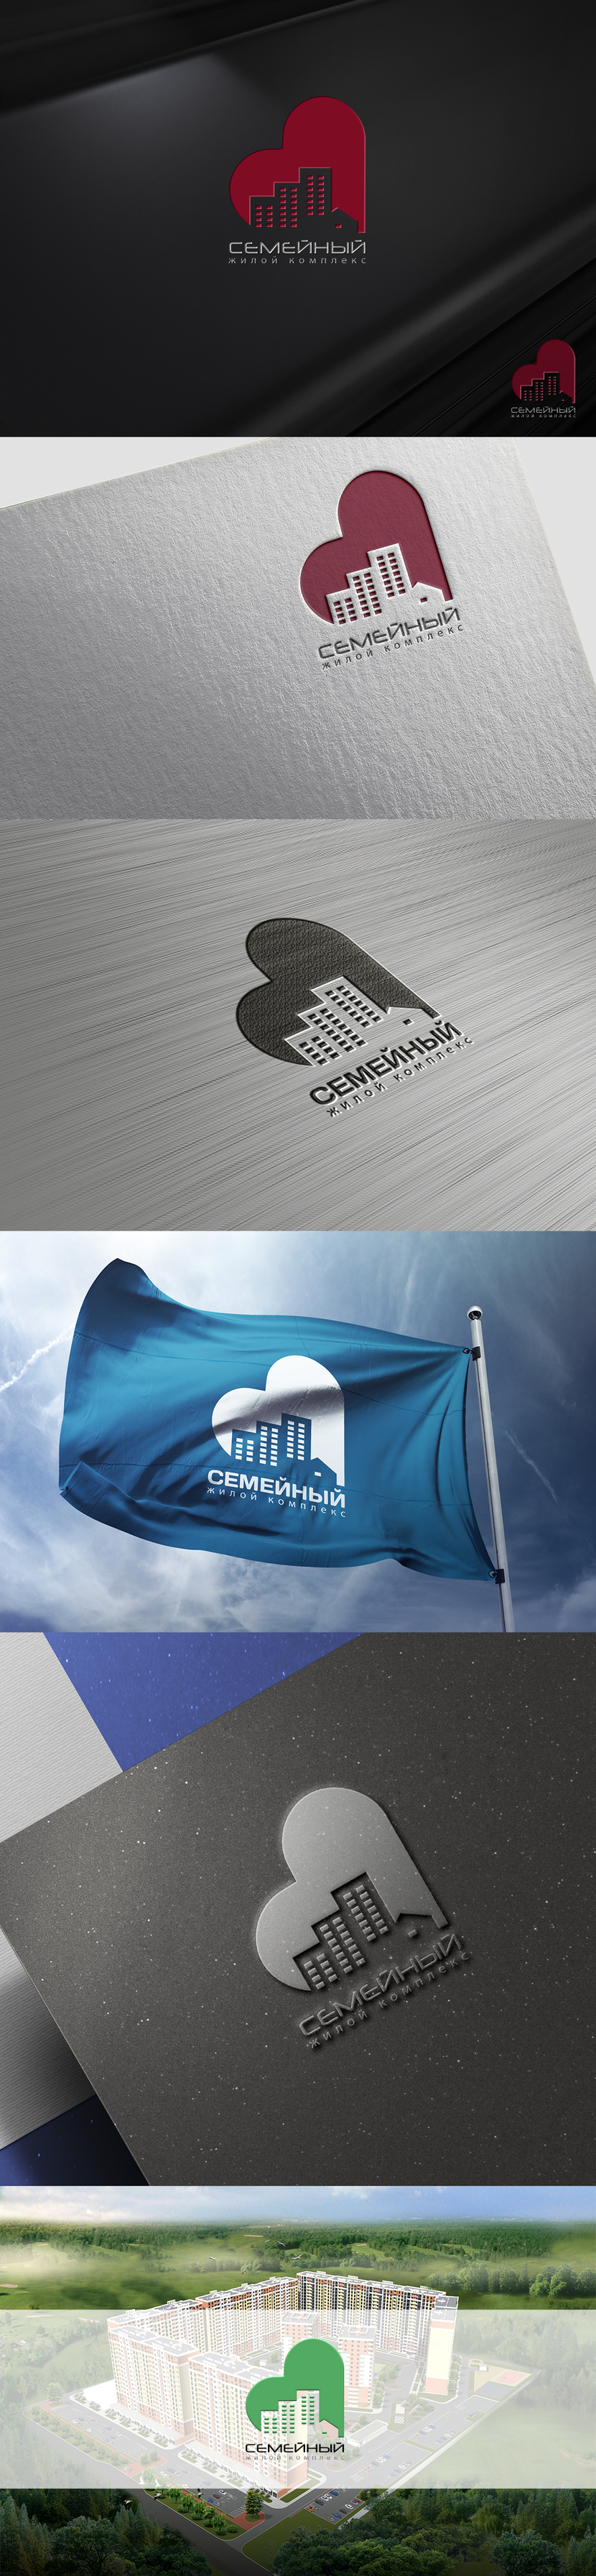 Разработка логотипа жилого комплекса "Семейный"